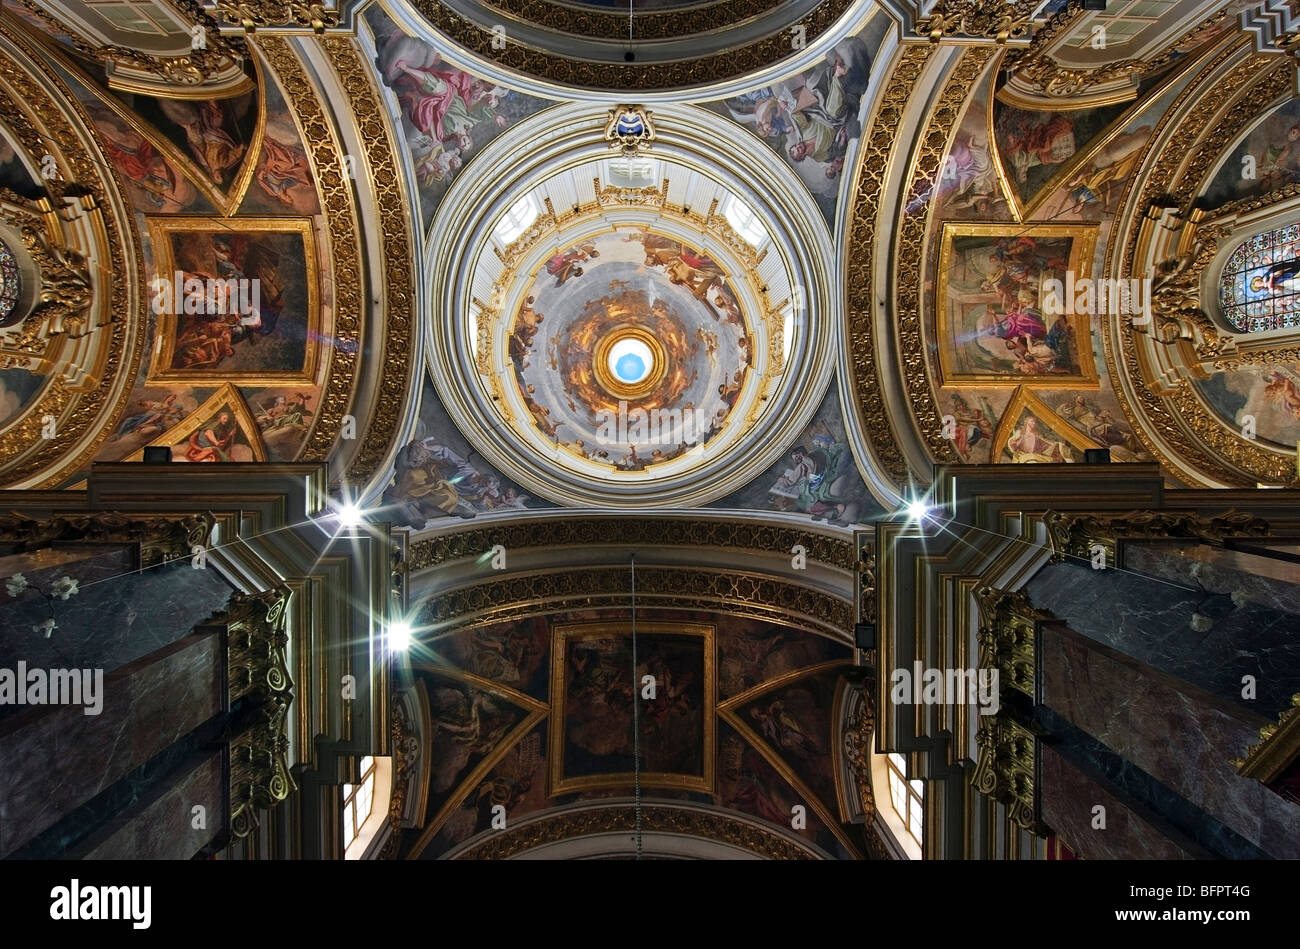 Les fresques de l'intérieur de la Cathédrale St Paul, Mdina, Malte. Banque D'Images